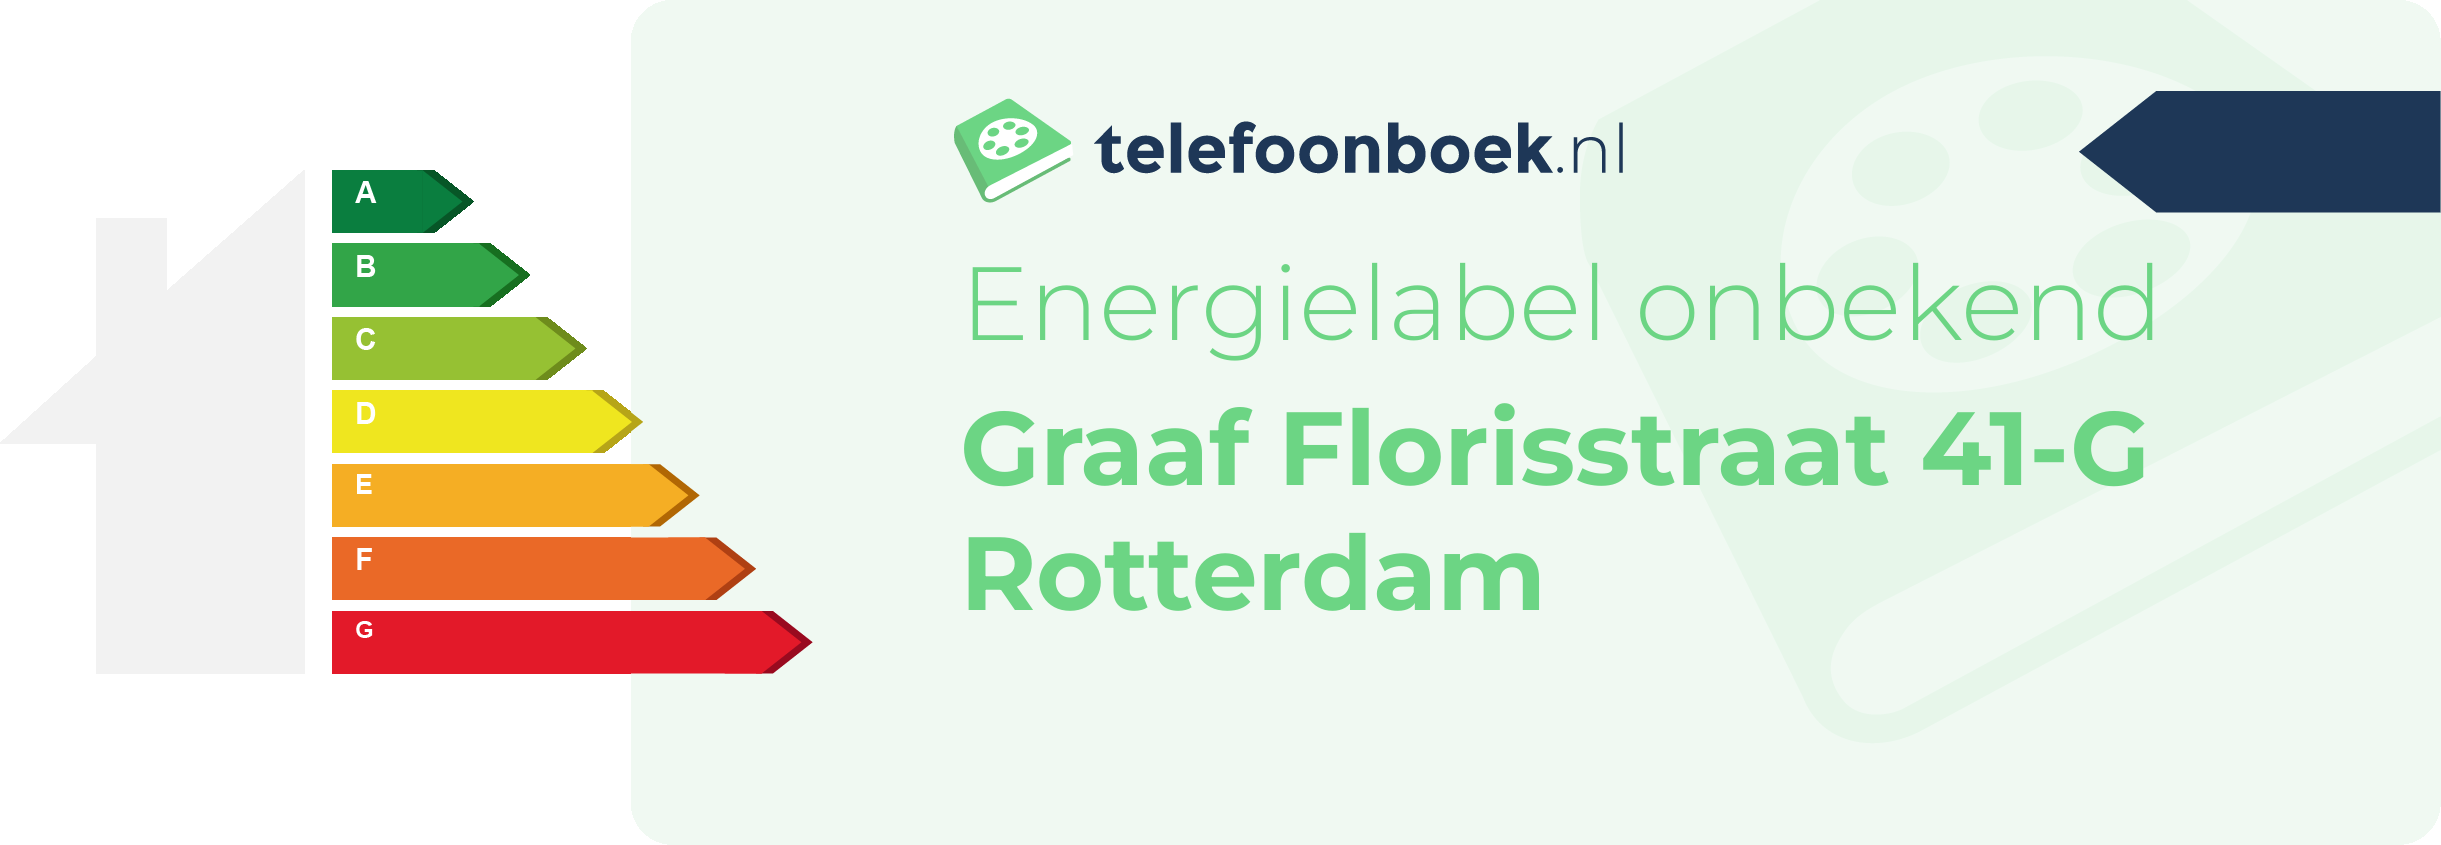 Energielabel Graaf Florisstraat 41-G Rotterdam